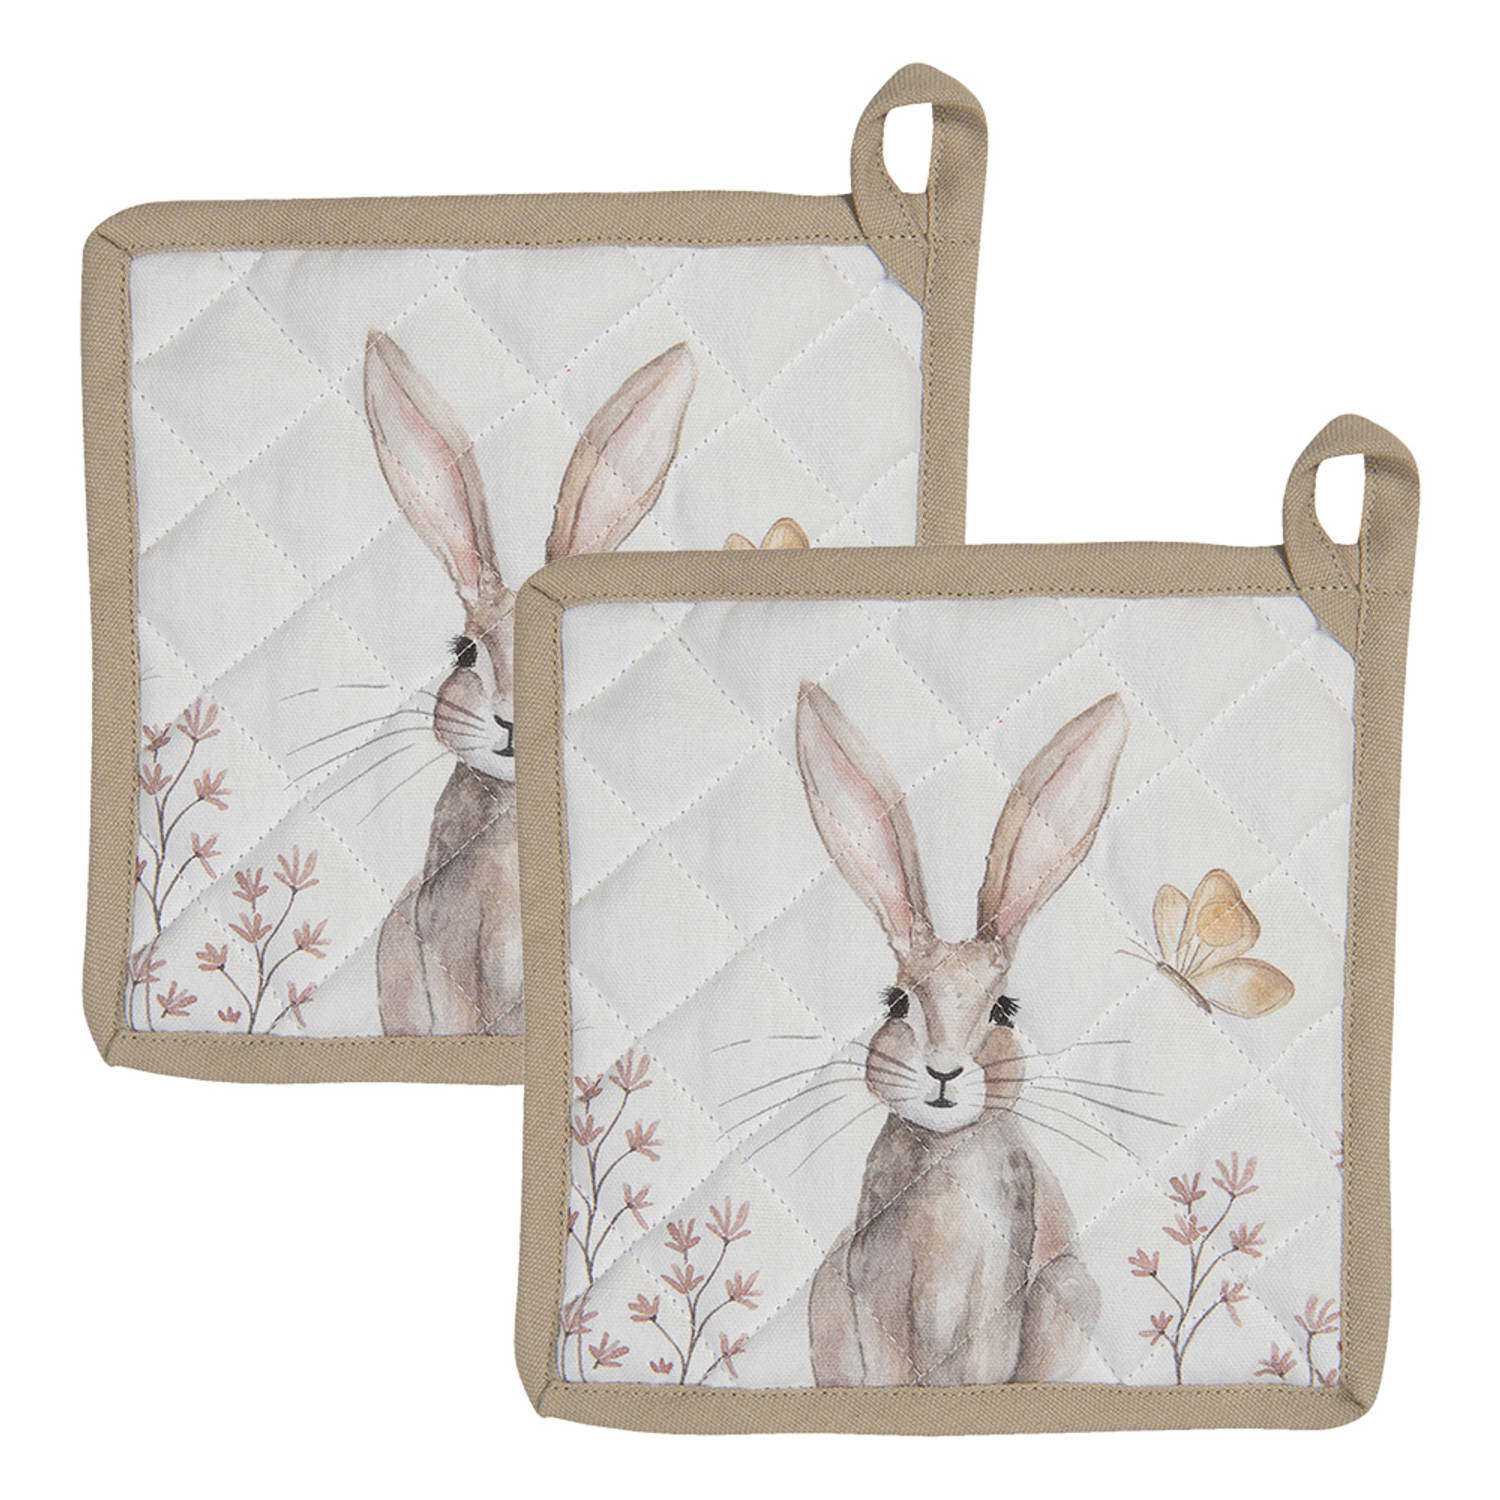 HAES DECO - Set van 2 Pannenlappen - formaat 20x20 cm - kleuren Bruin / Wit - van 100% Katoen - Collectie: Rustic Easter Bunny - Pannenlap